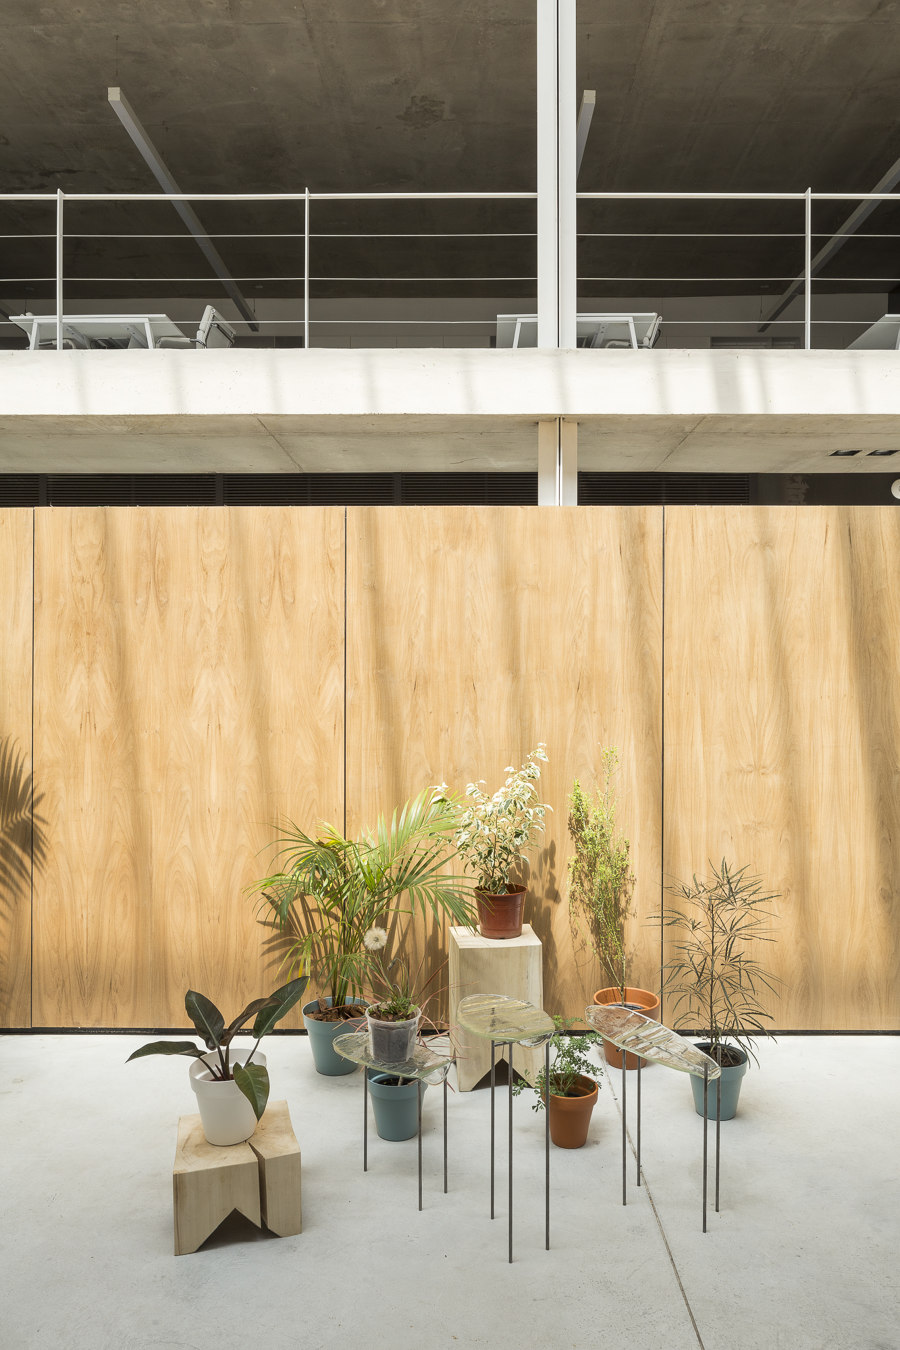 Soler Textiles Office von Ana Smud | Büroräume